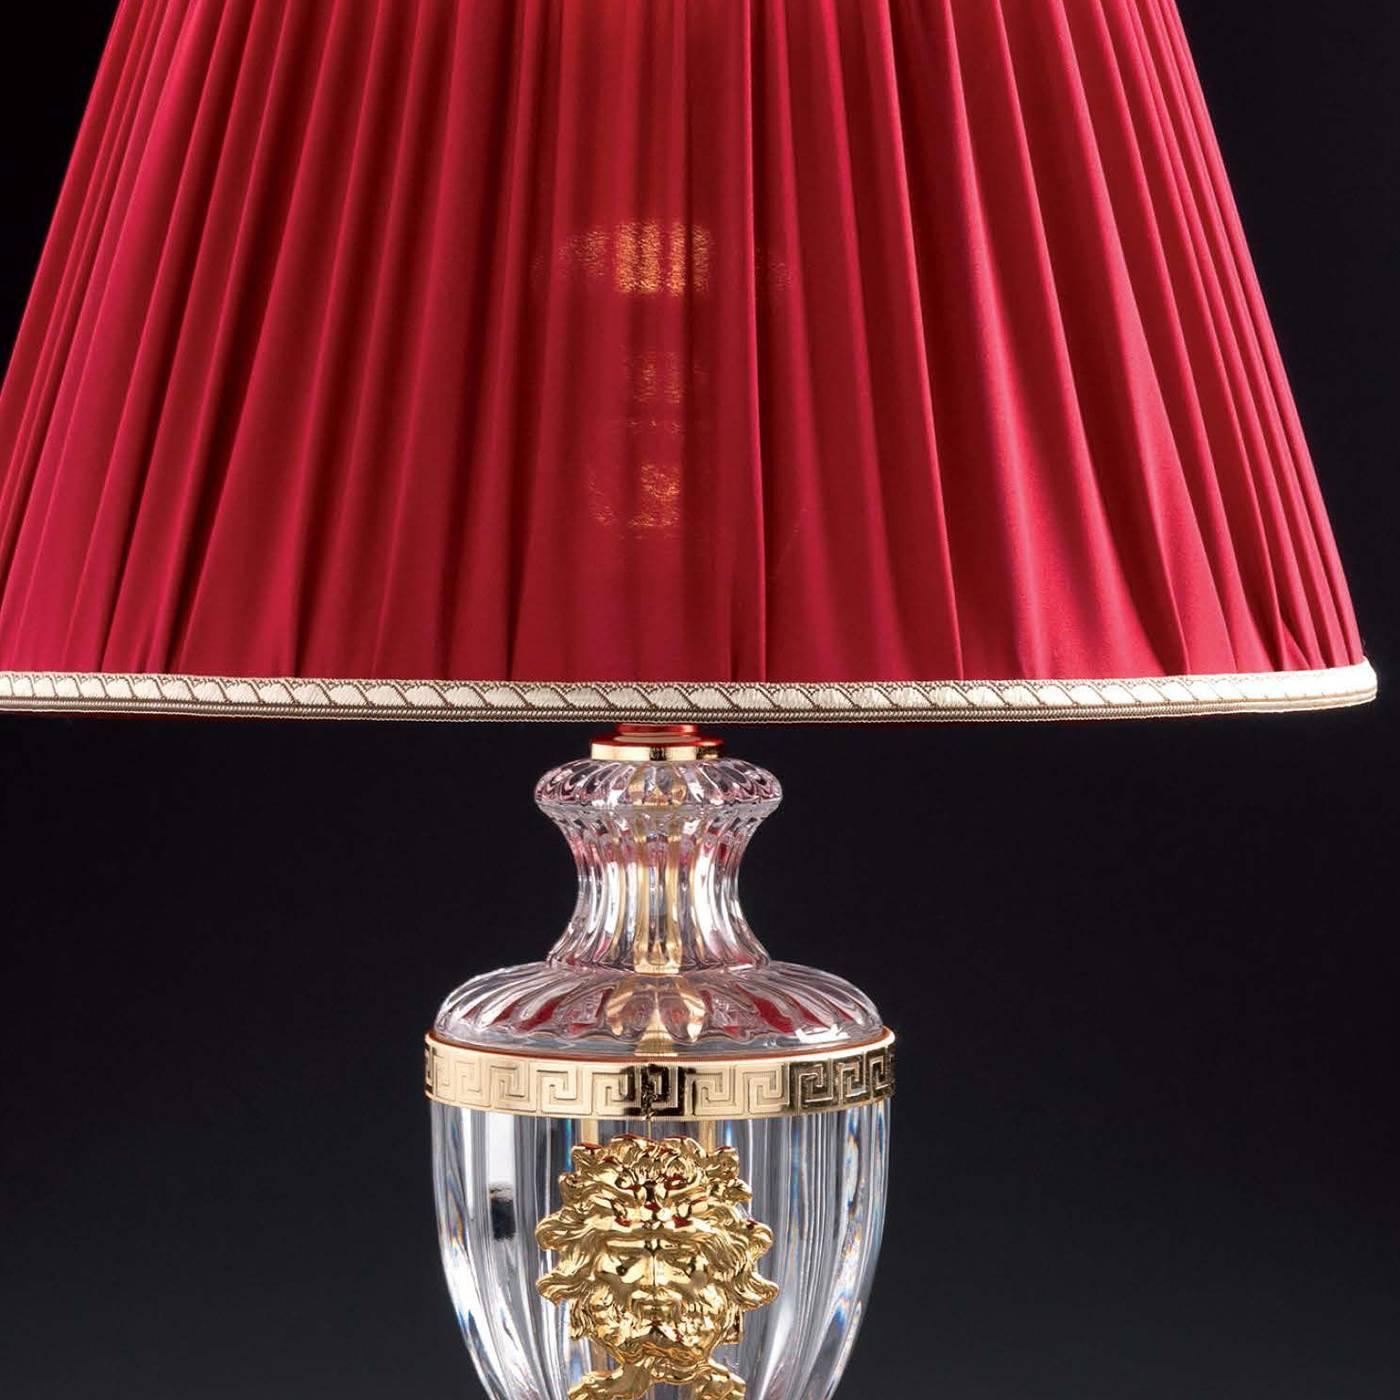 Le corps de cette lampe élégante est fabriqué en cristal clair et est orné d'éléments en laiton plaqué or 24 carats. La base est également en laiton plaqué or 24 carats. La lampe est surmontée d'un riche abat-jour rouge pour un effet luxueux.